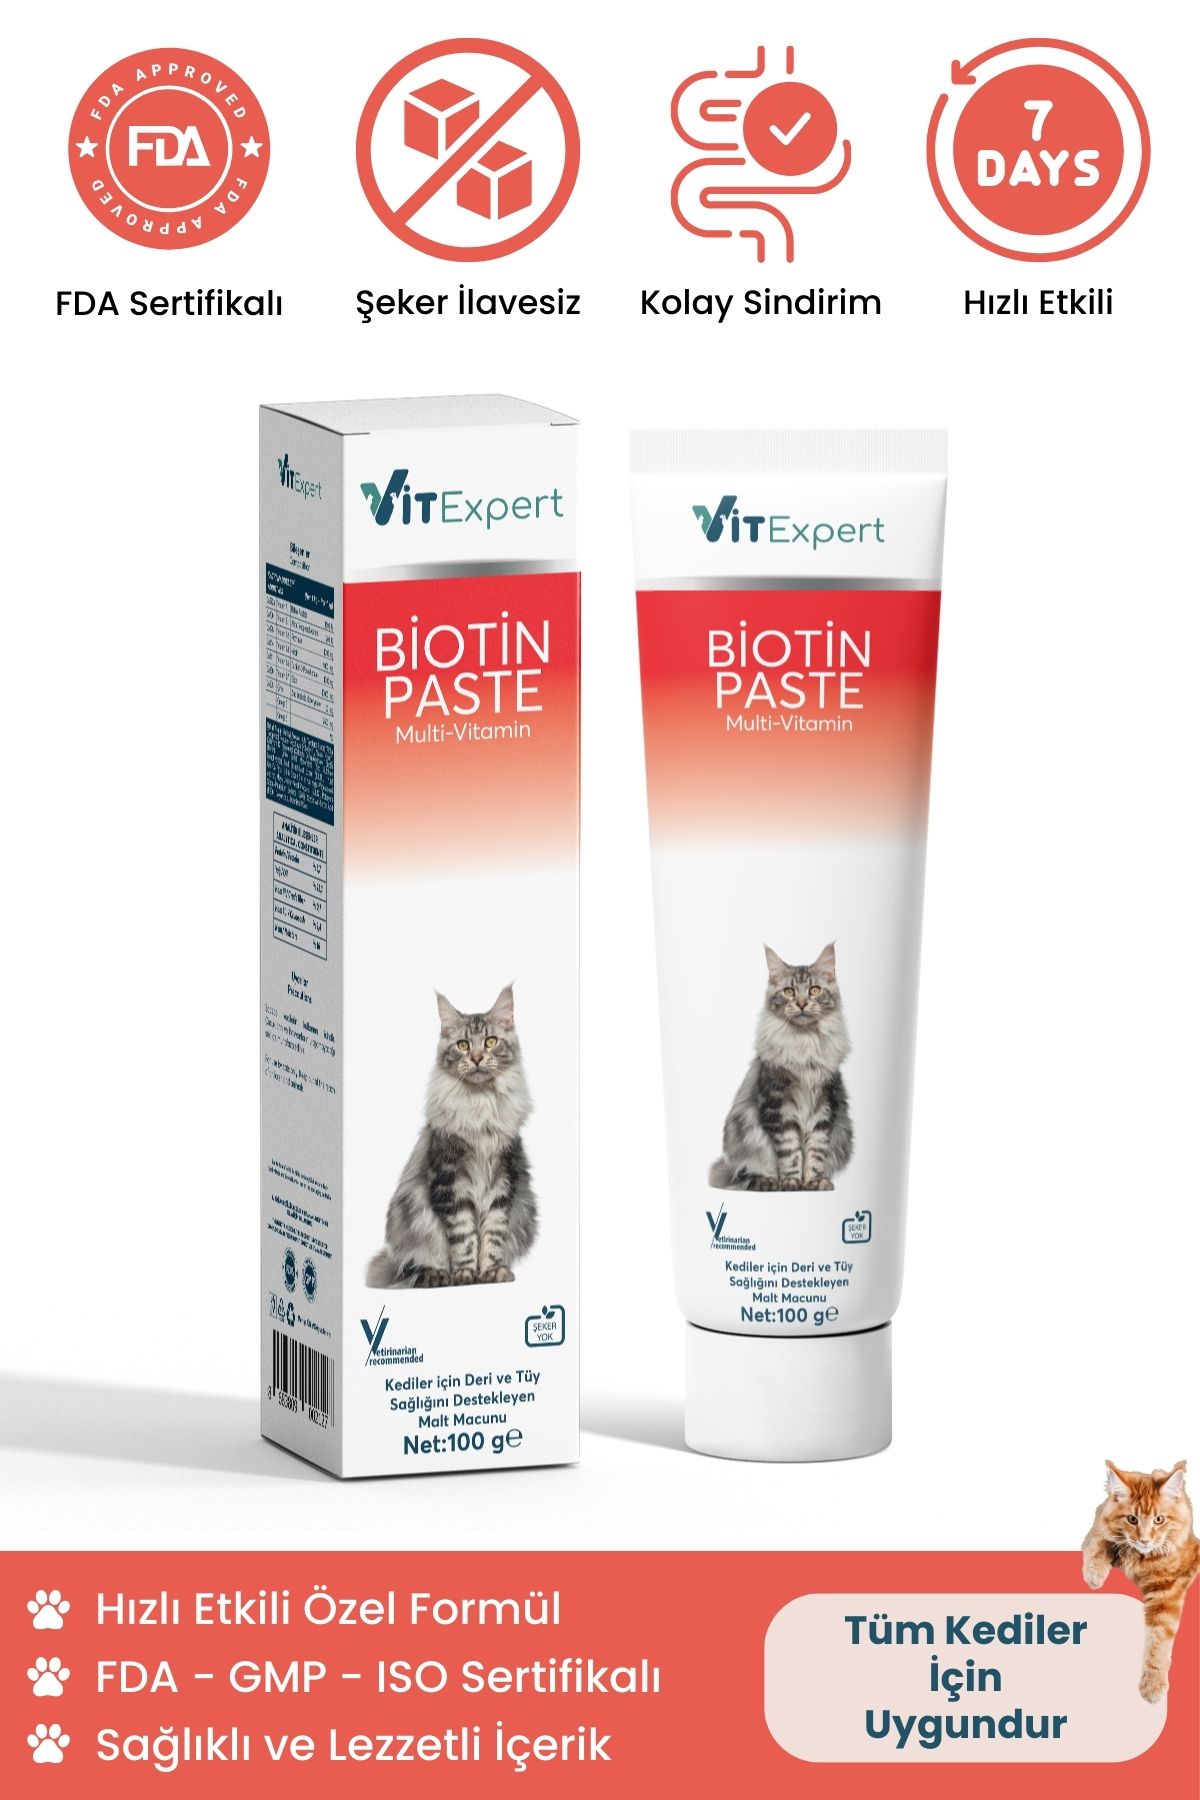 Vitexpert Biotin Paste Tüm Kediler Için Tüy Sağlığı Destekleyici Ve Tüy Dökülmesi Önleyici Malt Macun 100 gr